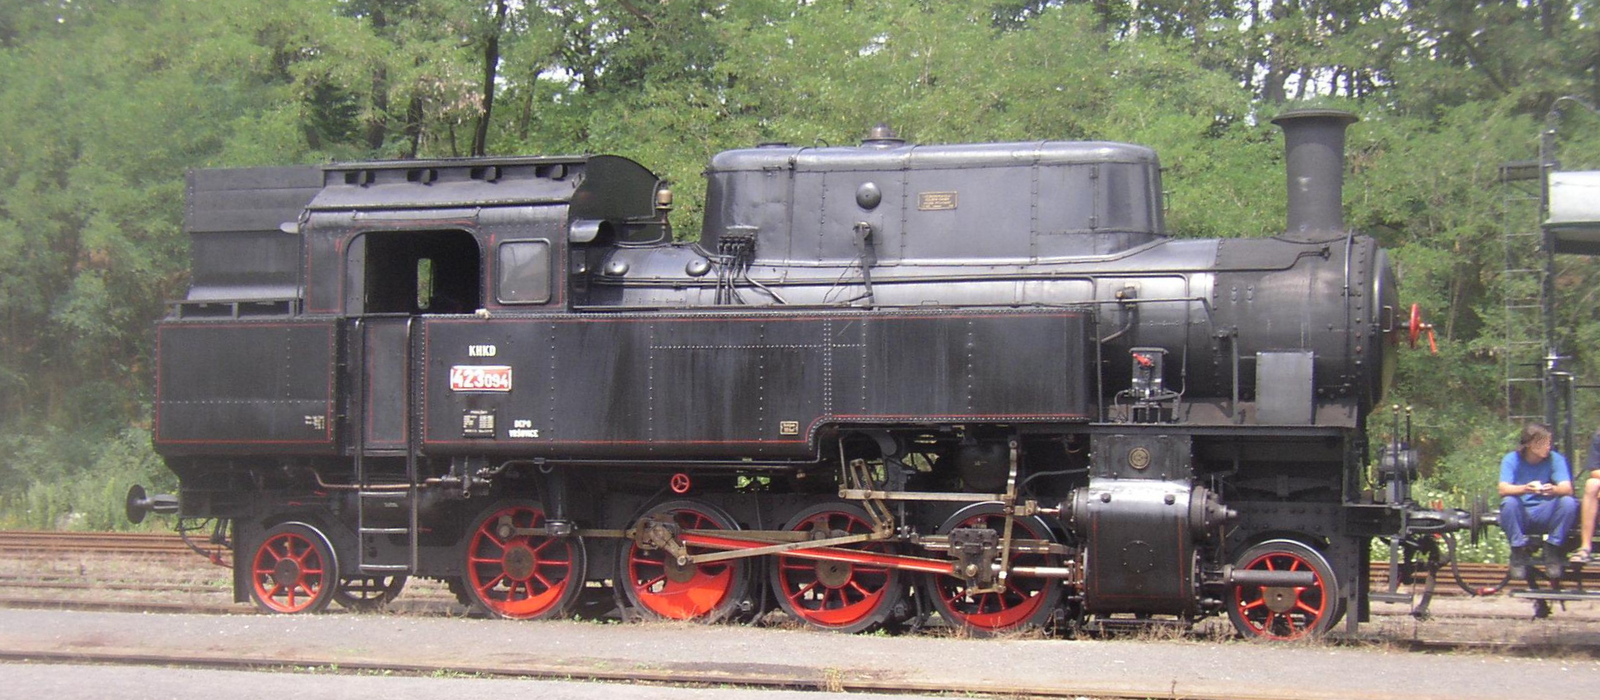 423.094 in July 2007 at Lužná u Rakovníka station